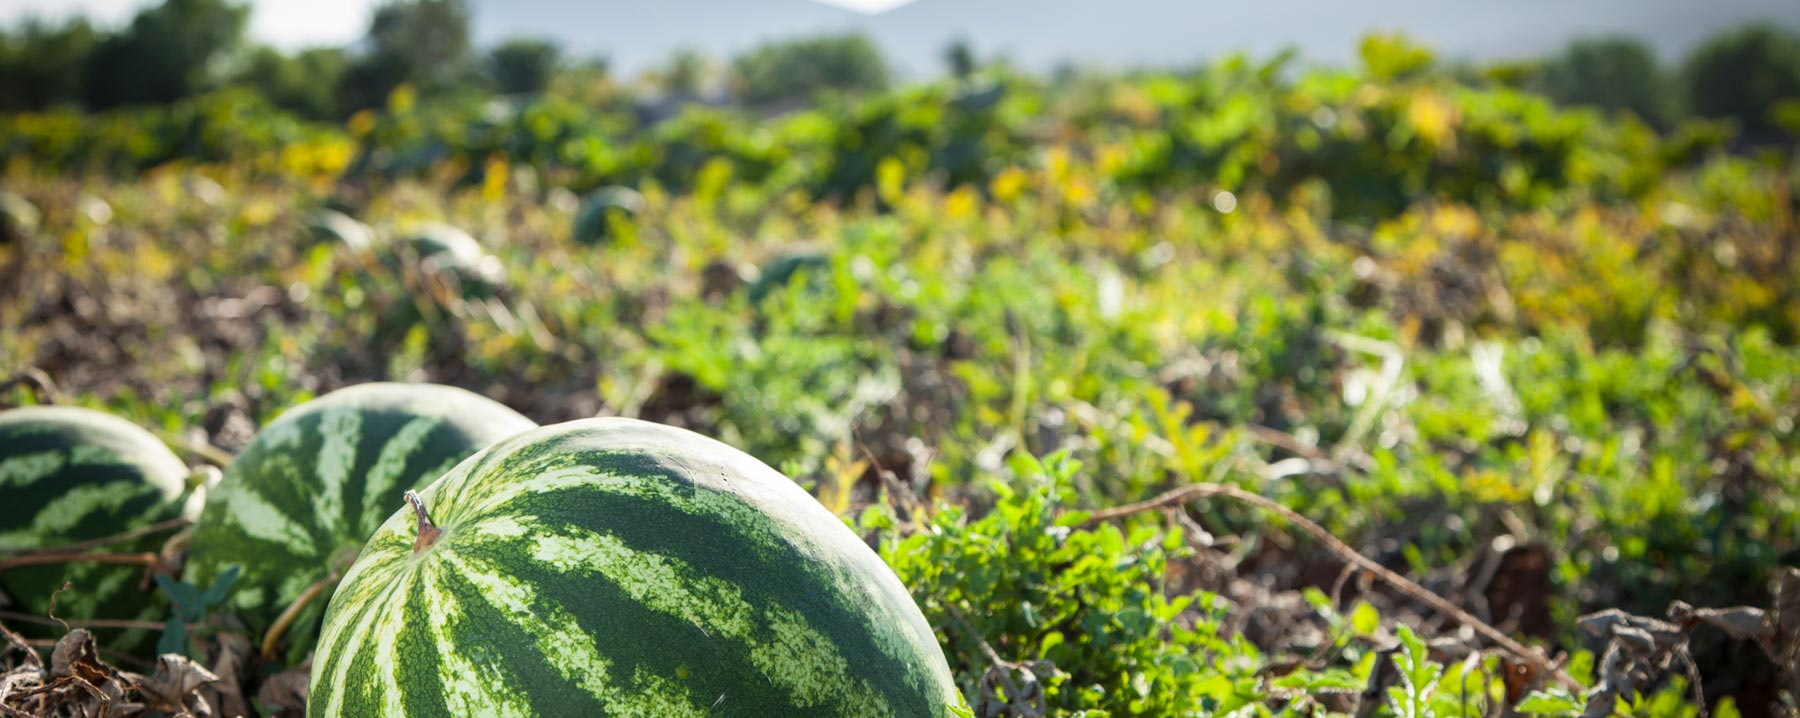 watermelon in field